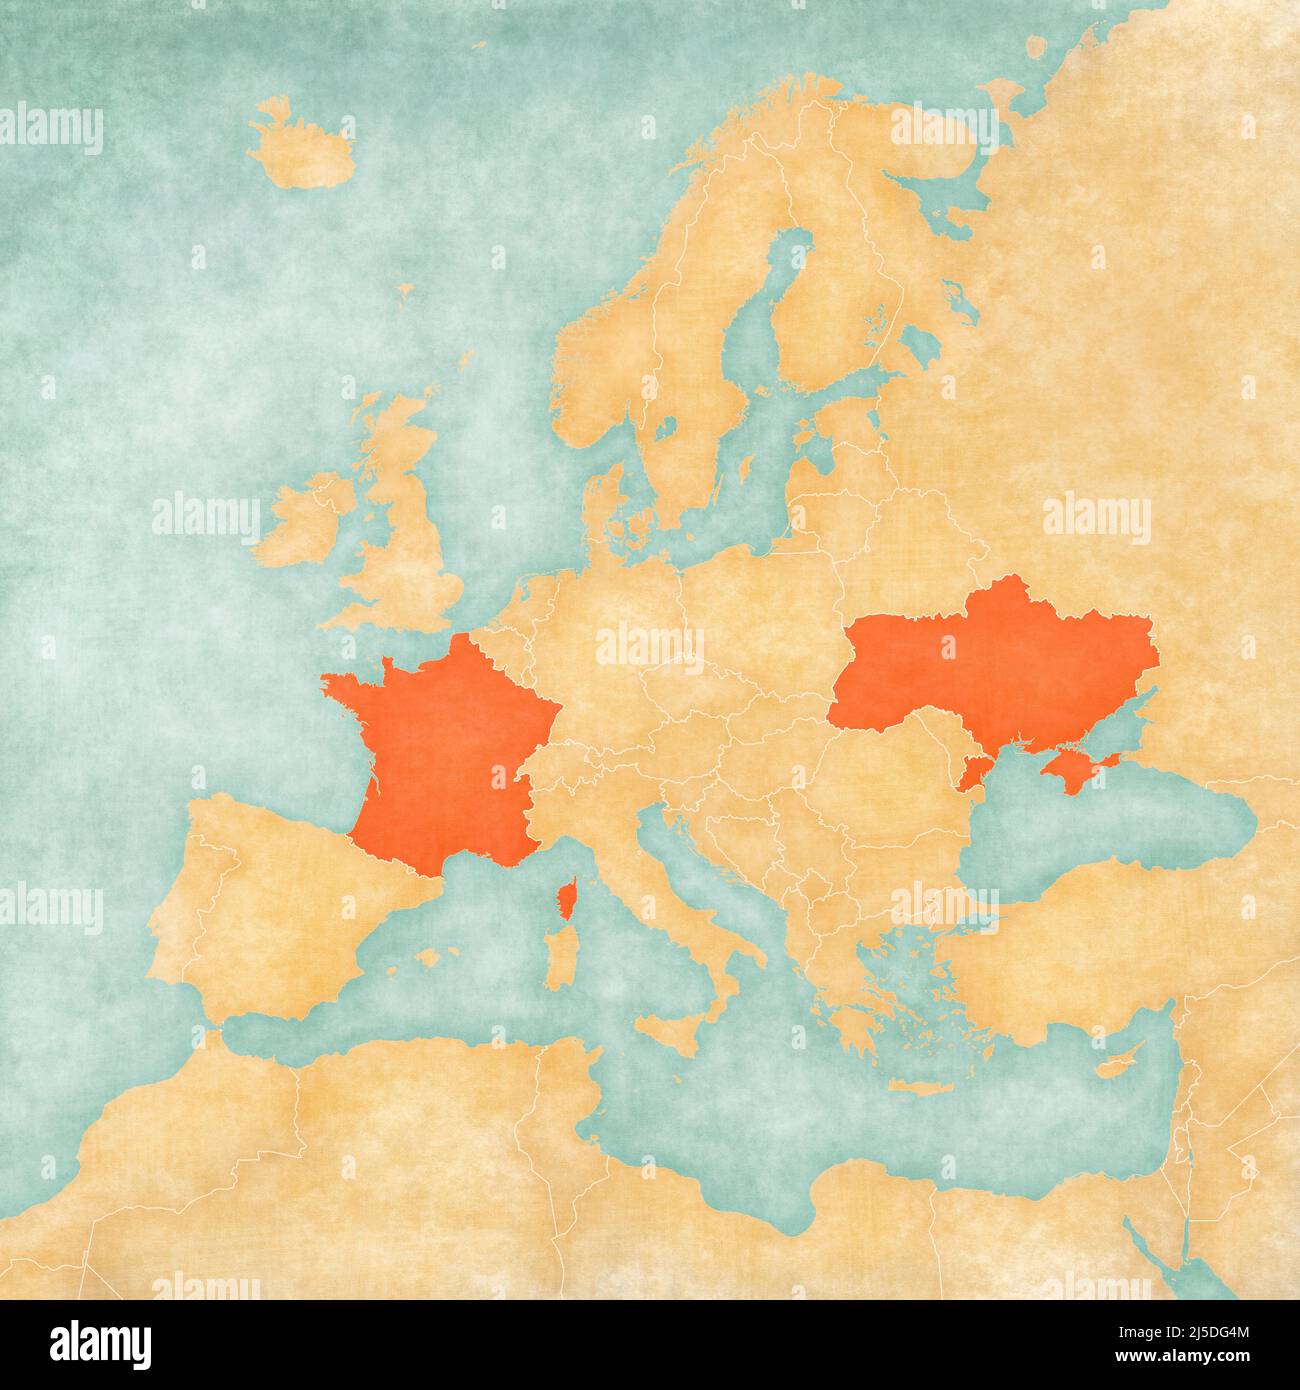 Ucraina e Francia sulla mappa d'Europa in morbido grunge e stile vintage, come carta vecchia con pittura acquerello. Foto Stock